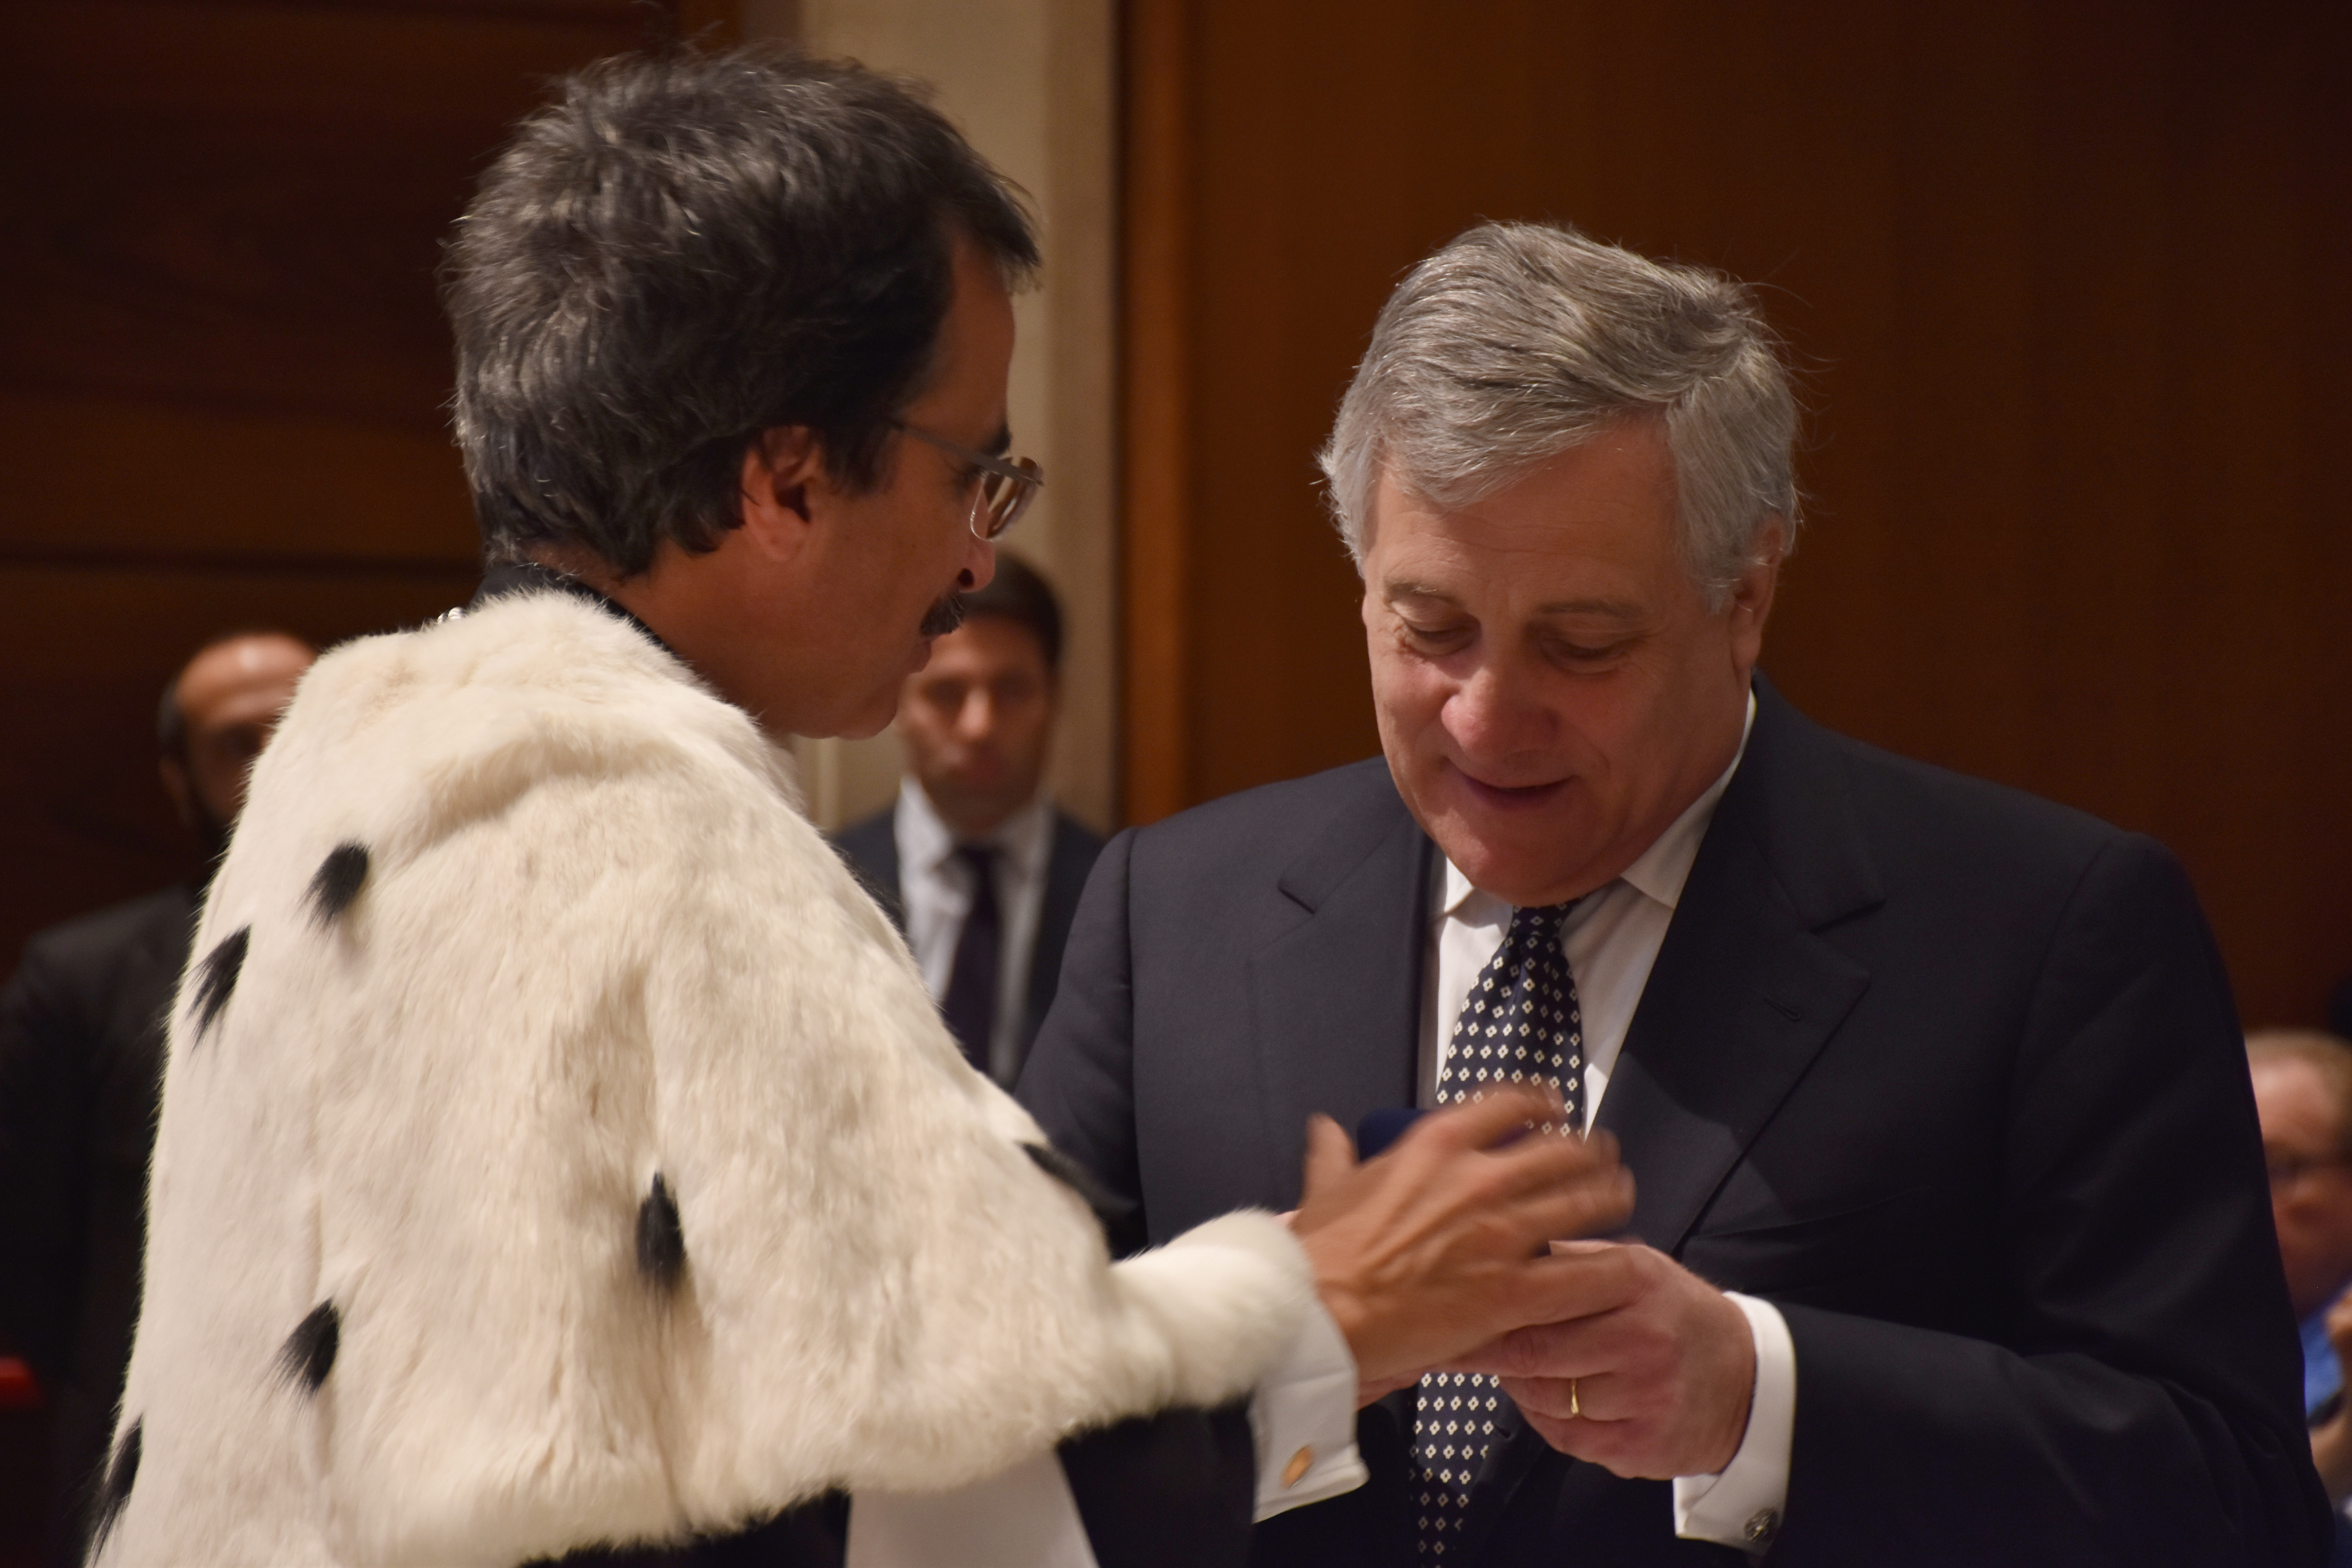 Il Magnifico Rettore consegna a Tajani il sigillo della Lumsa